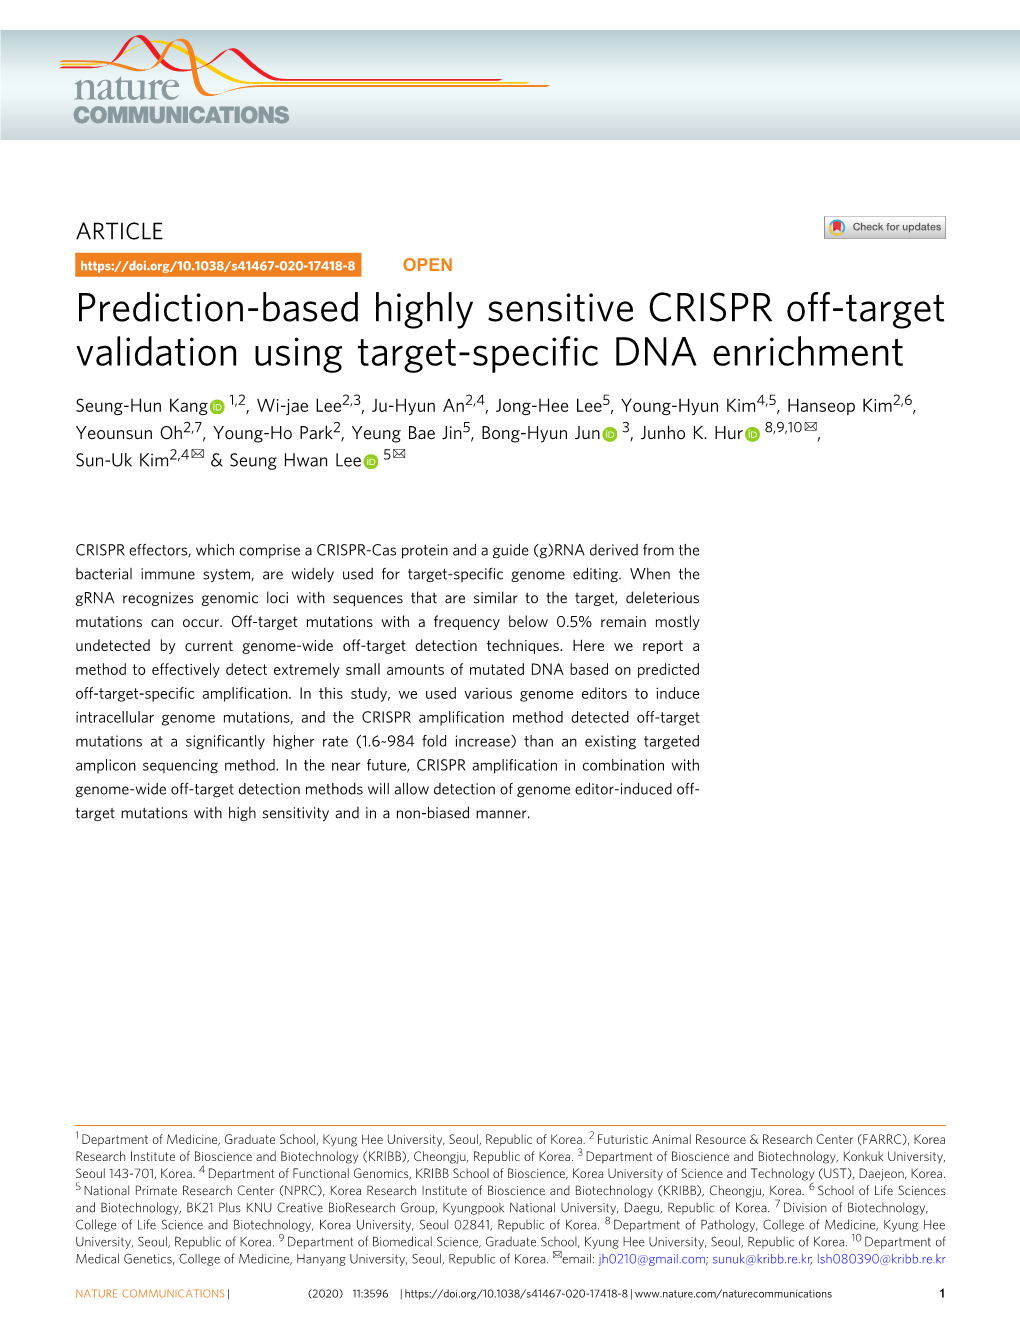 Prediction-Based Highly Sensitive CRISPR Off-Target Validation Using Target-Speciﬁc DNA Enrichment